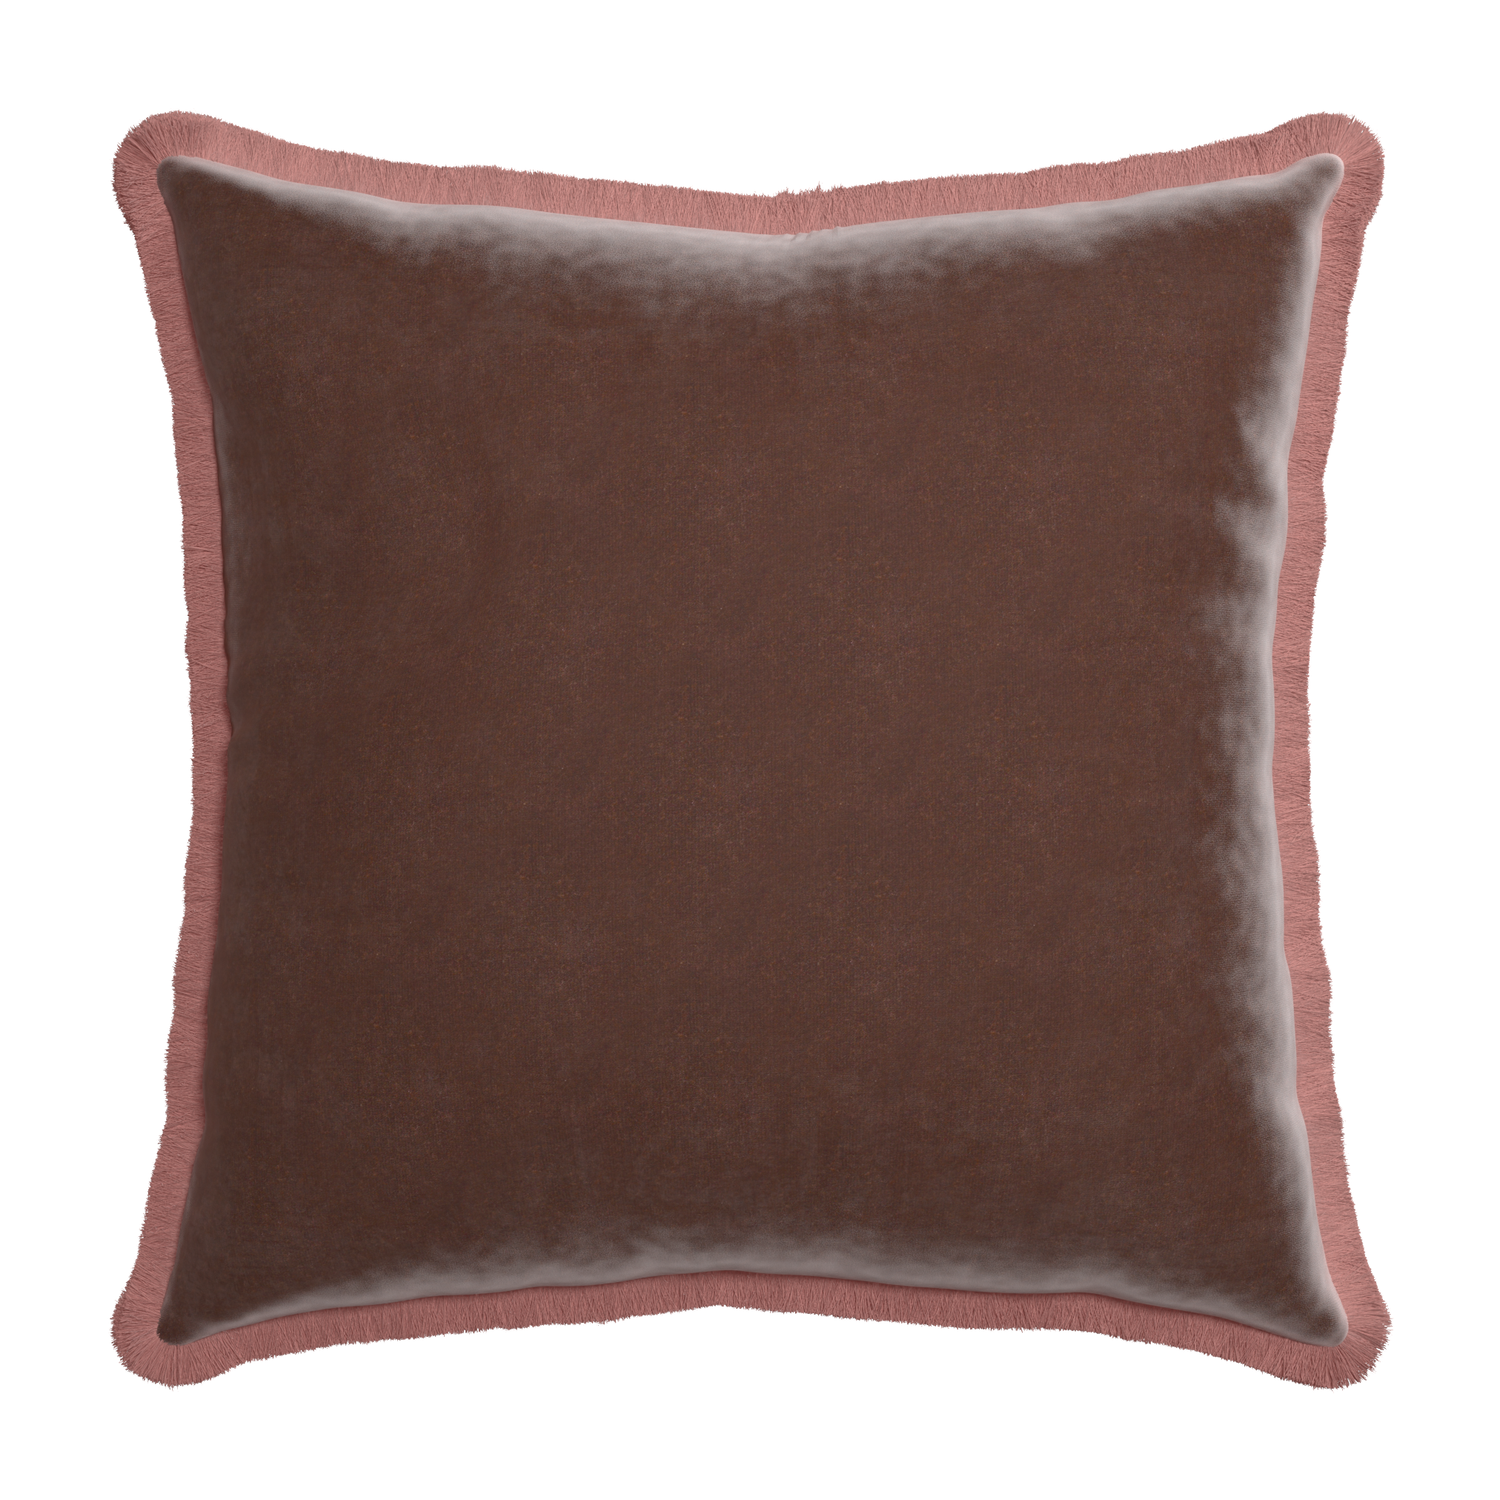 Euro-sham walnut velvet custom pillow with d fringe on white background